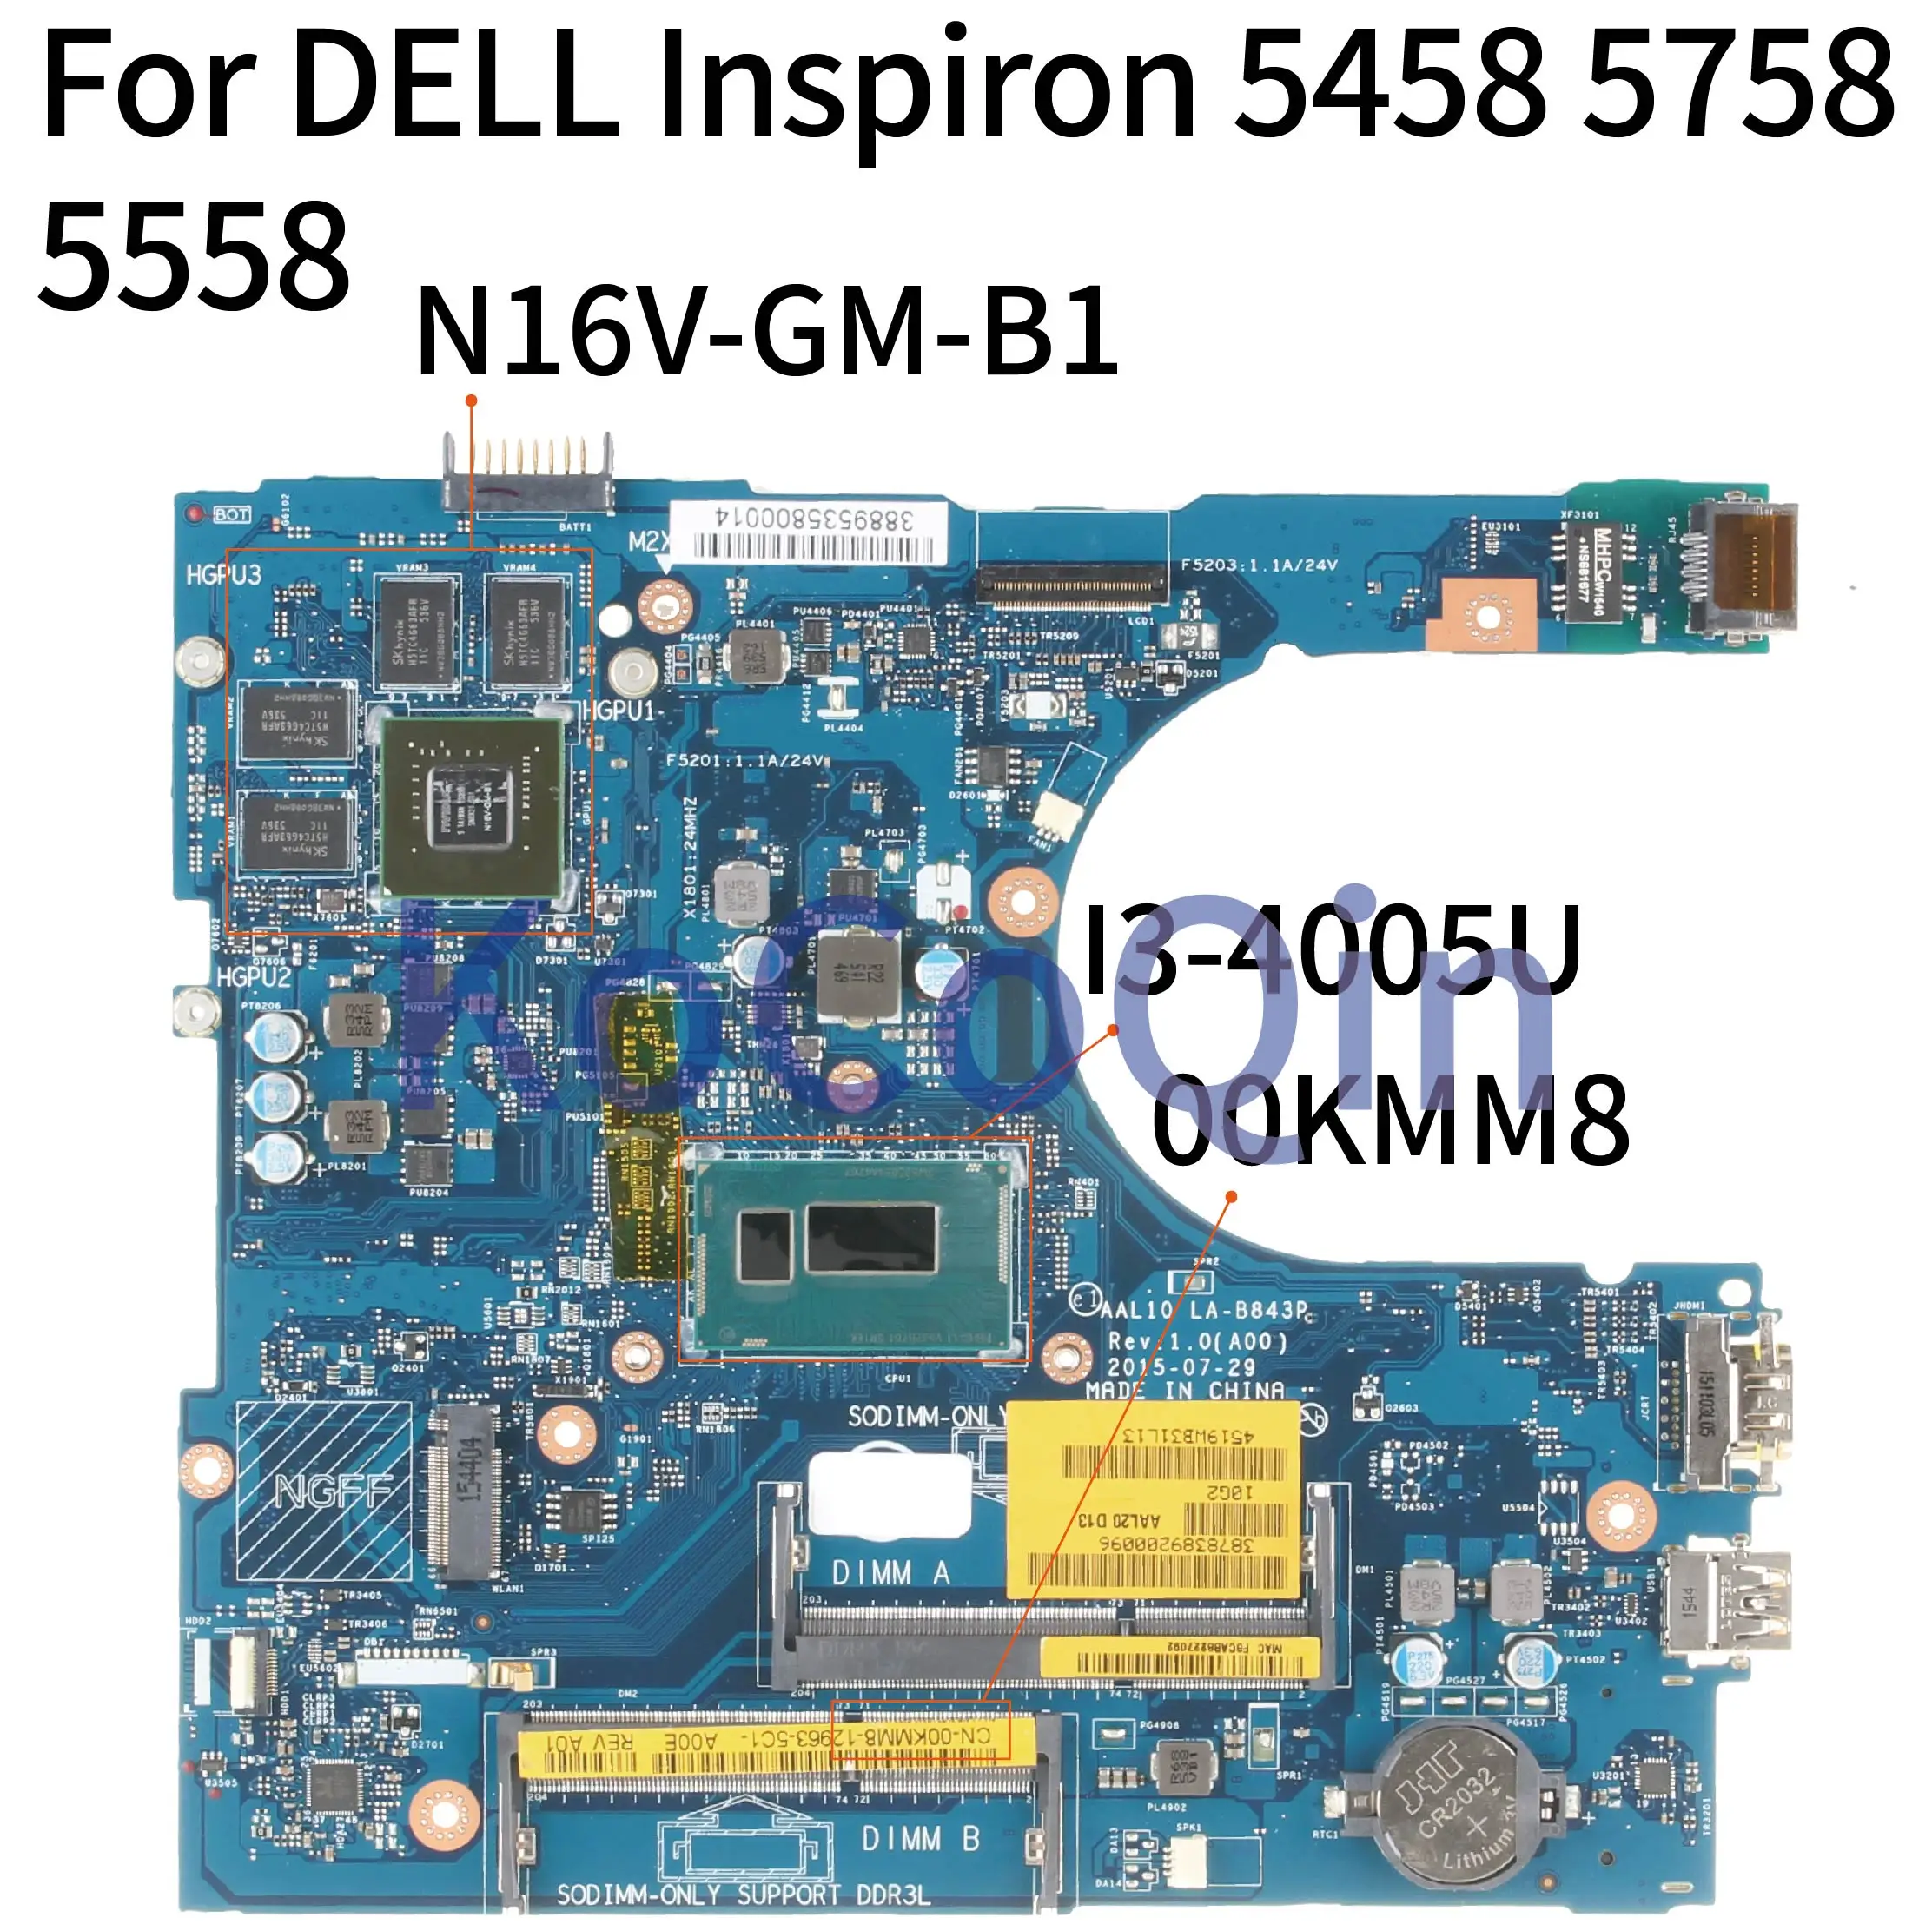 

For DELL Inspiron 5458 5758 5558 I3-4005U SR1EK N16V-GM-B1 Notebook Mainboard CN-00KMM8 00KMM8 AAL10 LA-B843P Laptop Motherboard